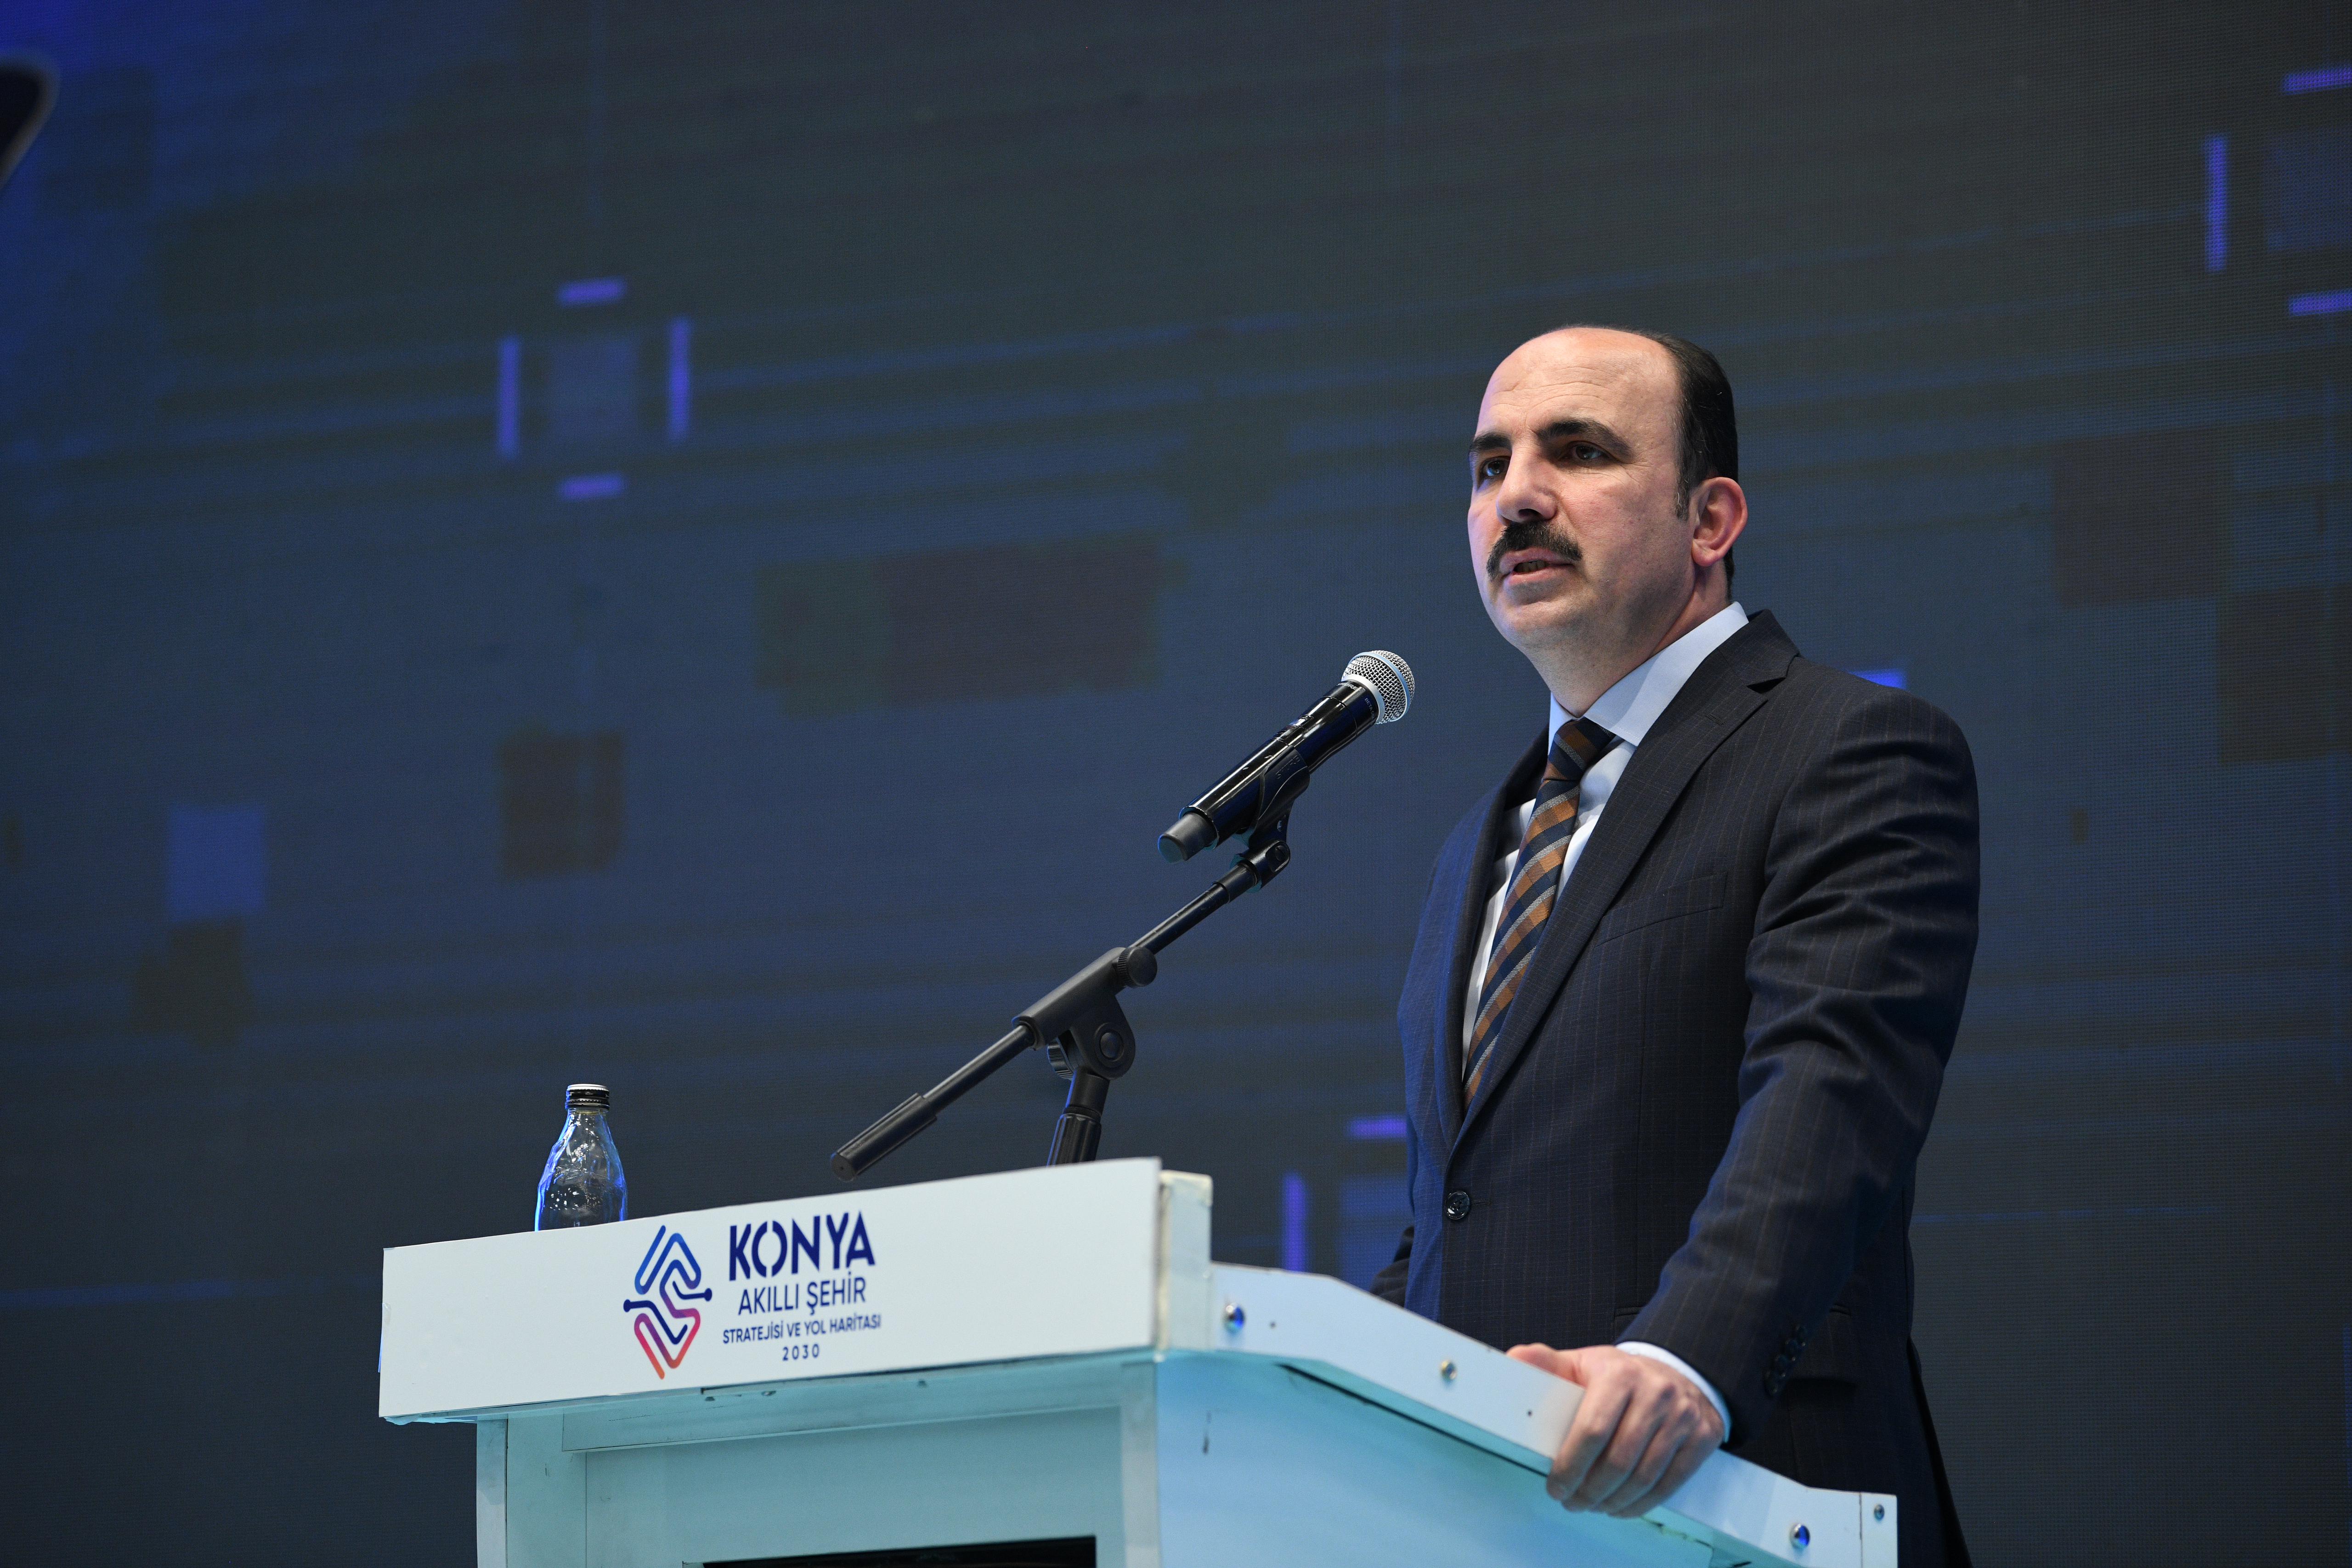 Başkan Altay: “Konya Türkiye Yüzyılı’nda ülkemizin teknoloji üssü olacak”